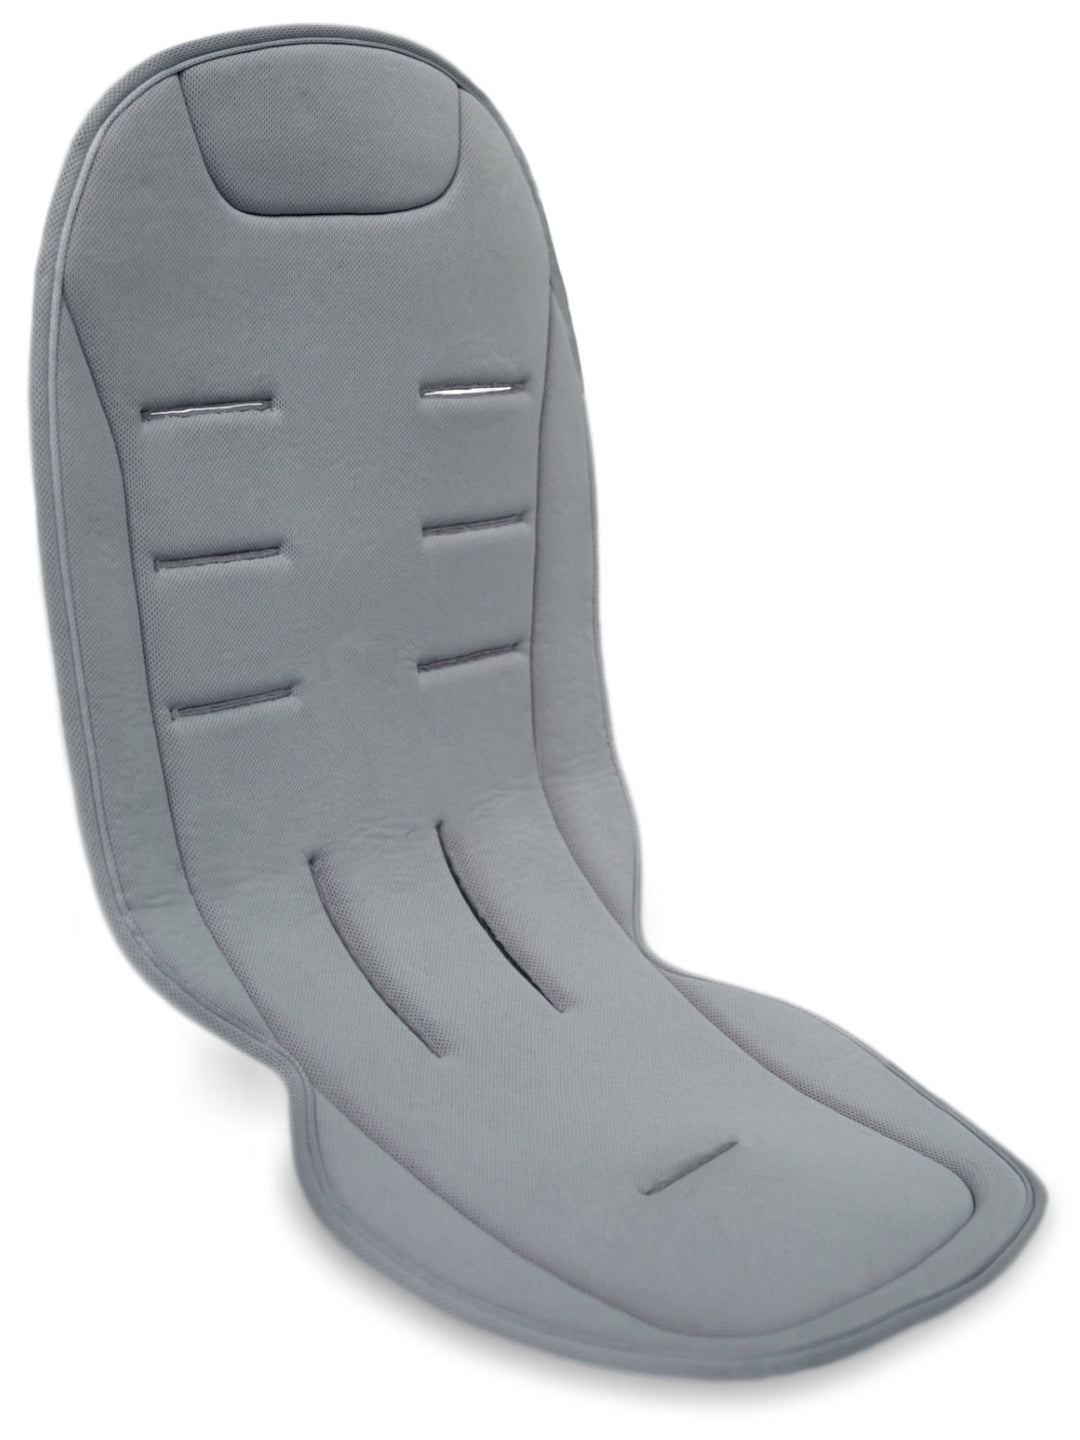 Komfort Sitzauflage Grau